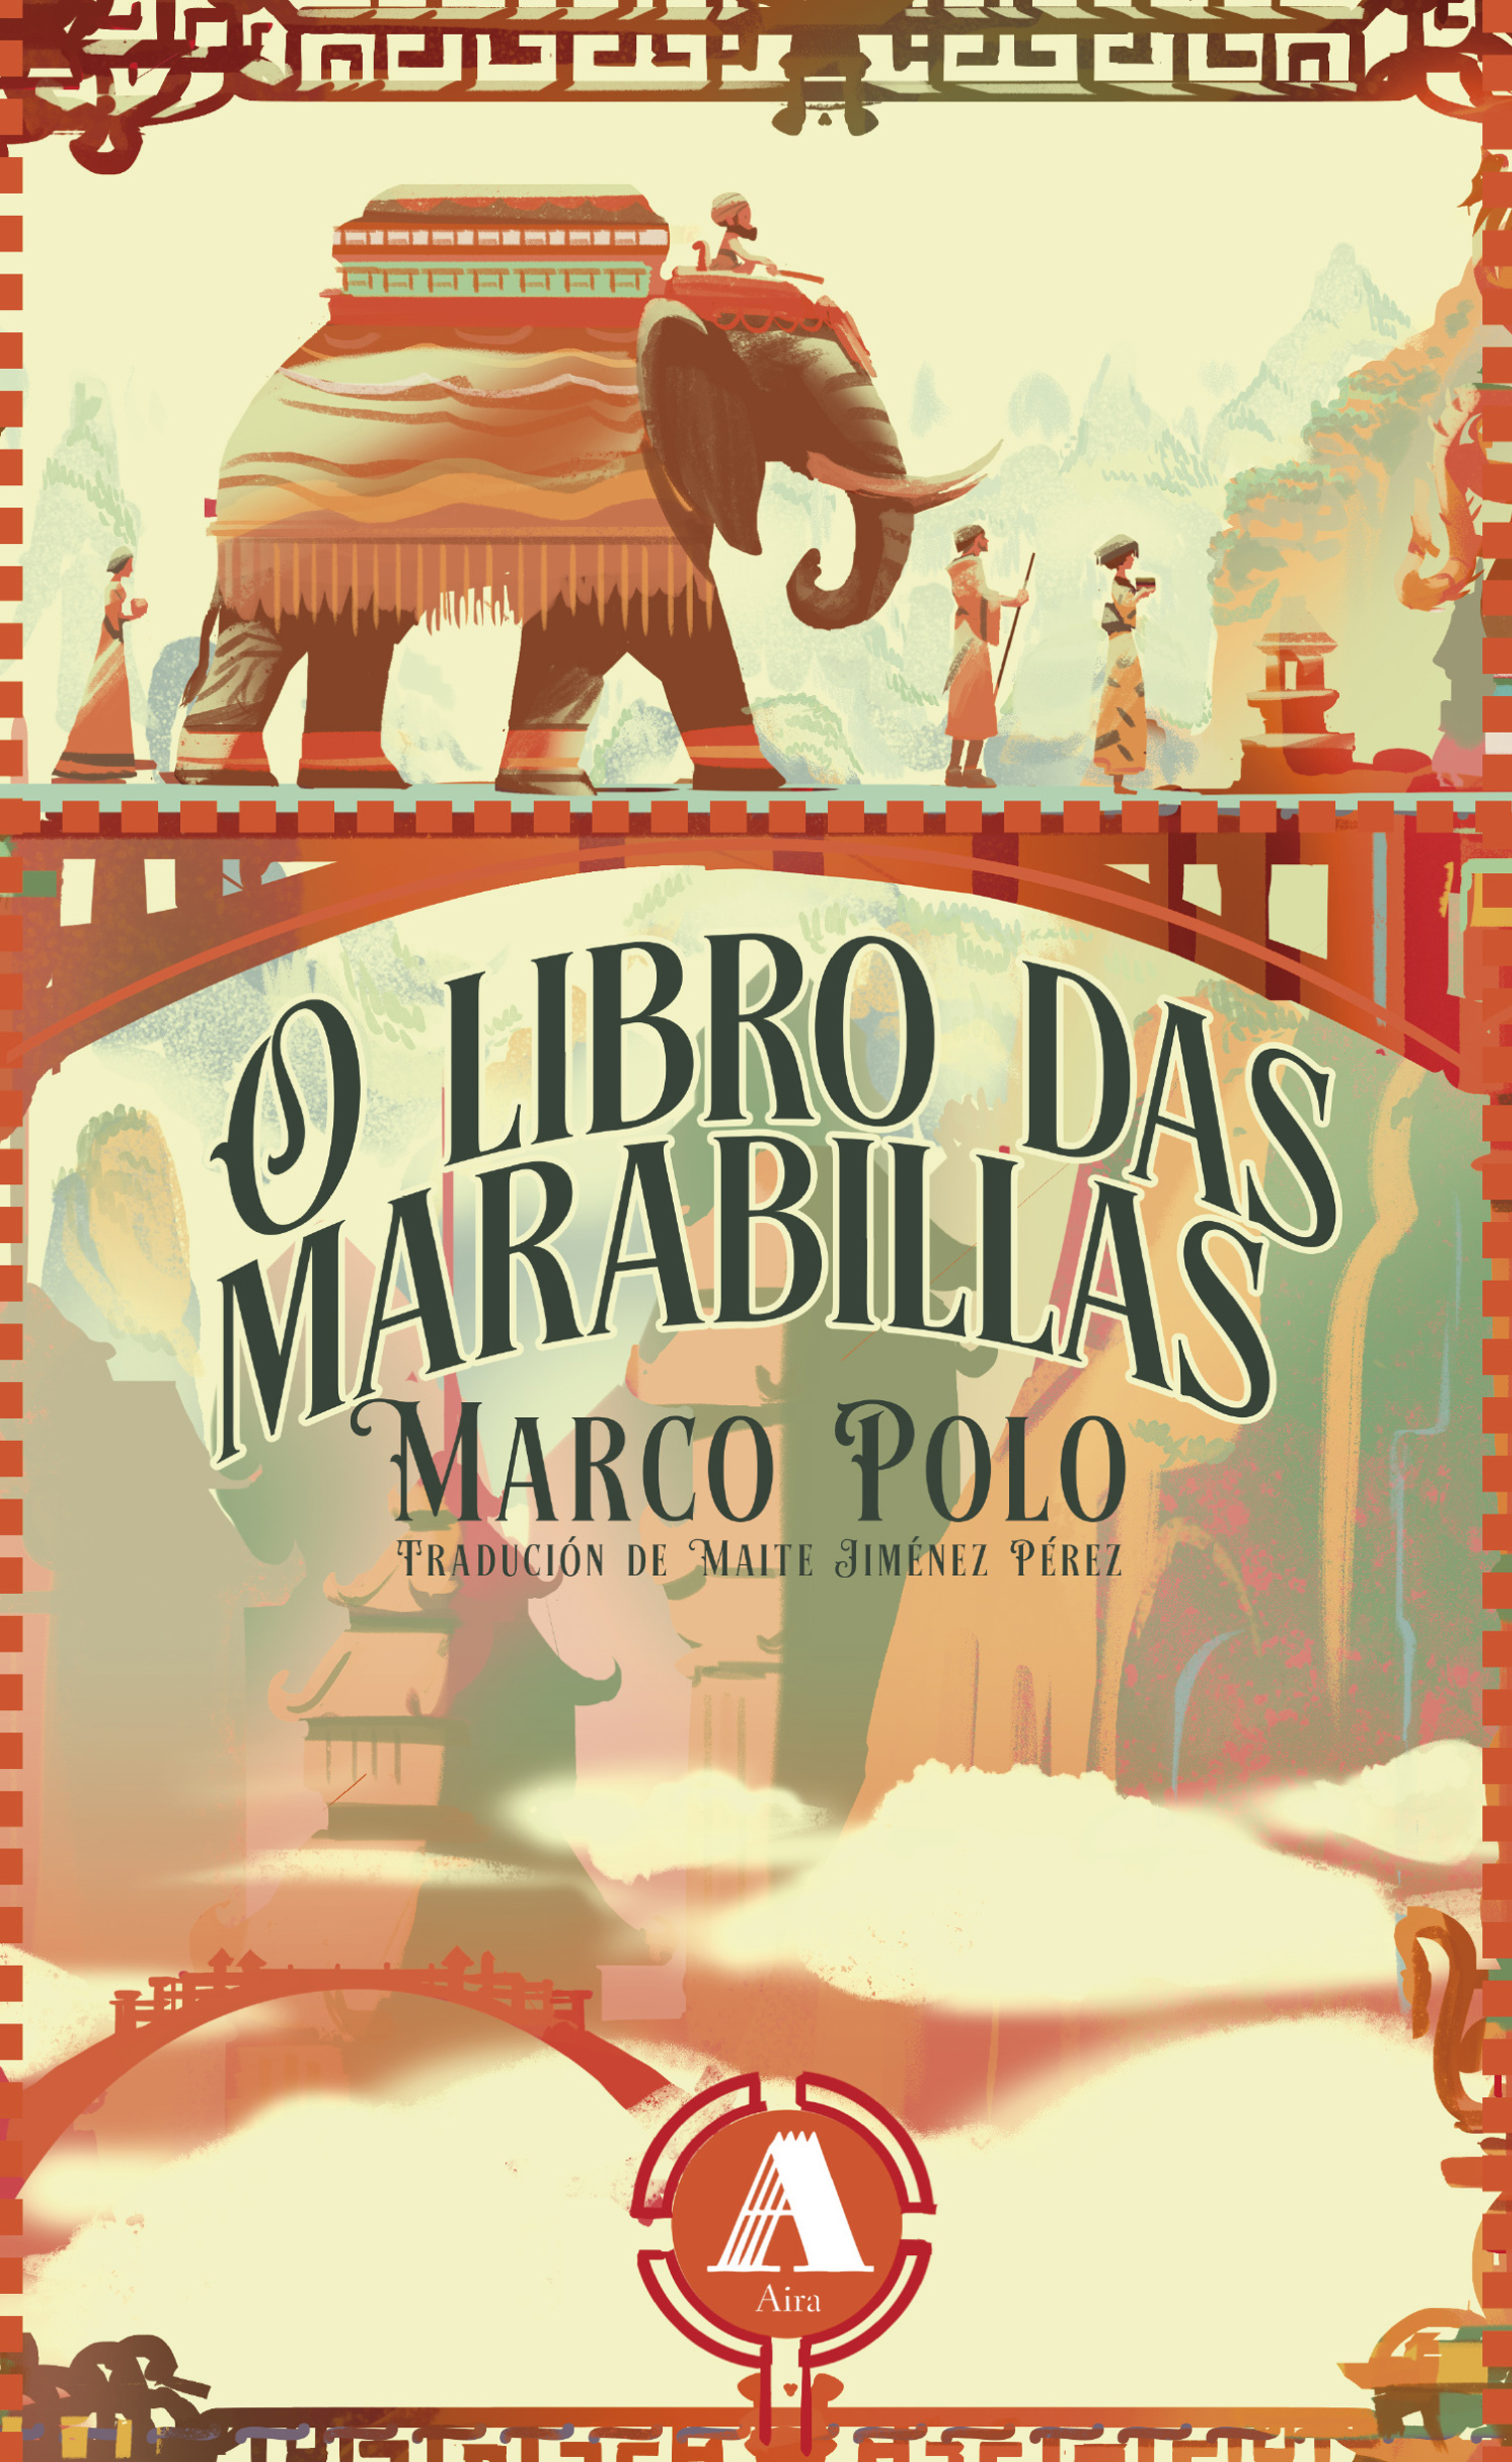 Marco Polo: O libro das marabillas (Aira)